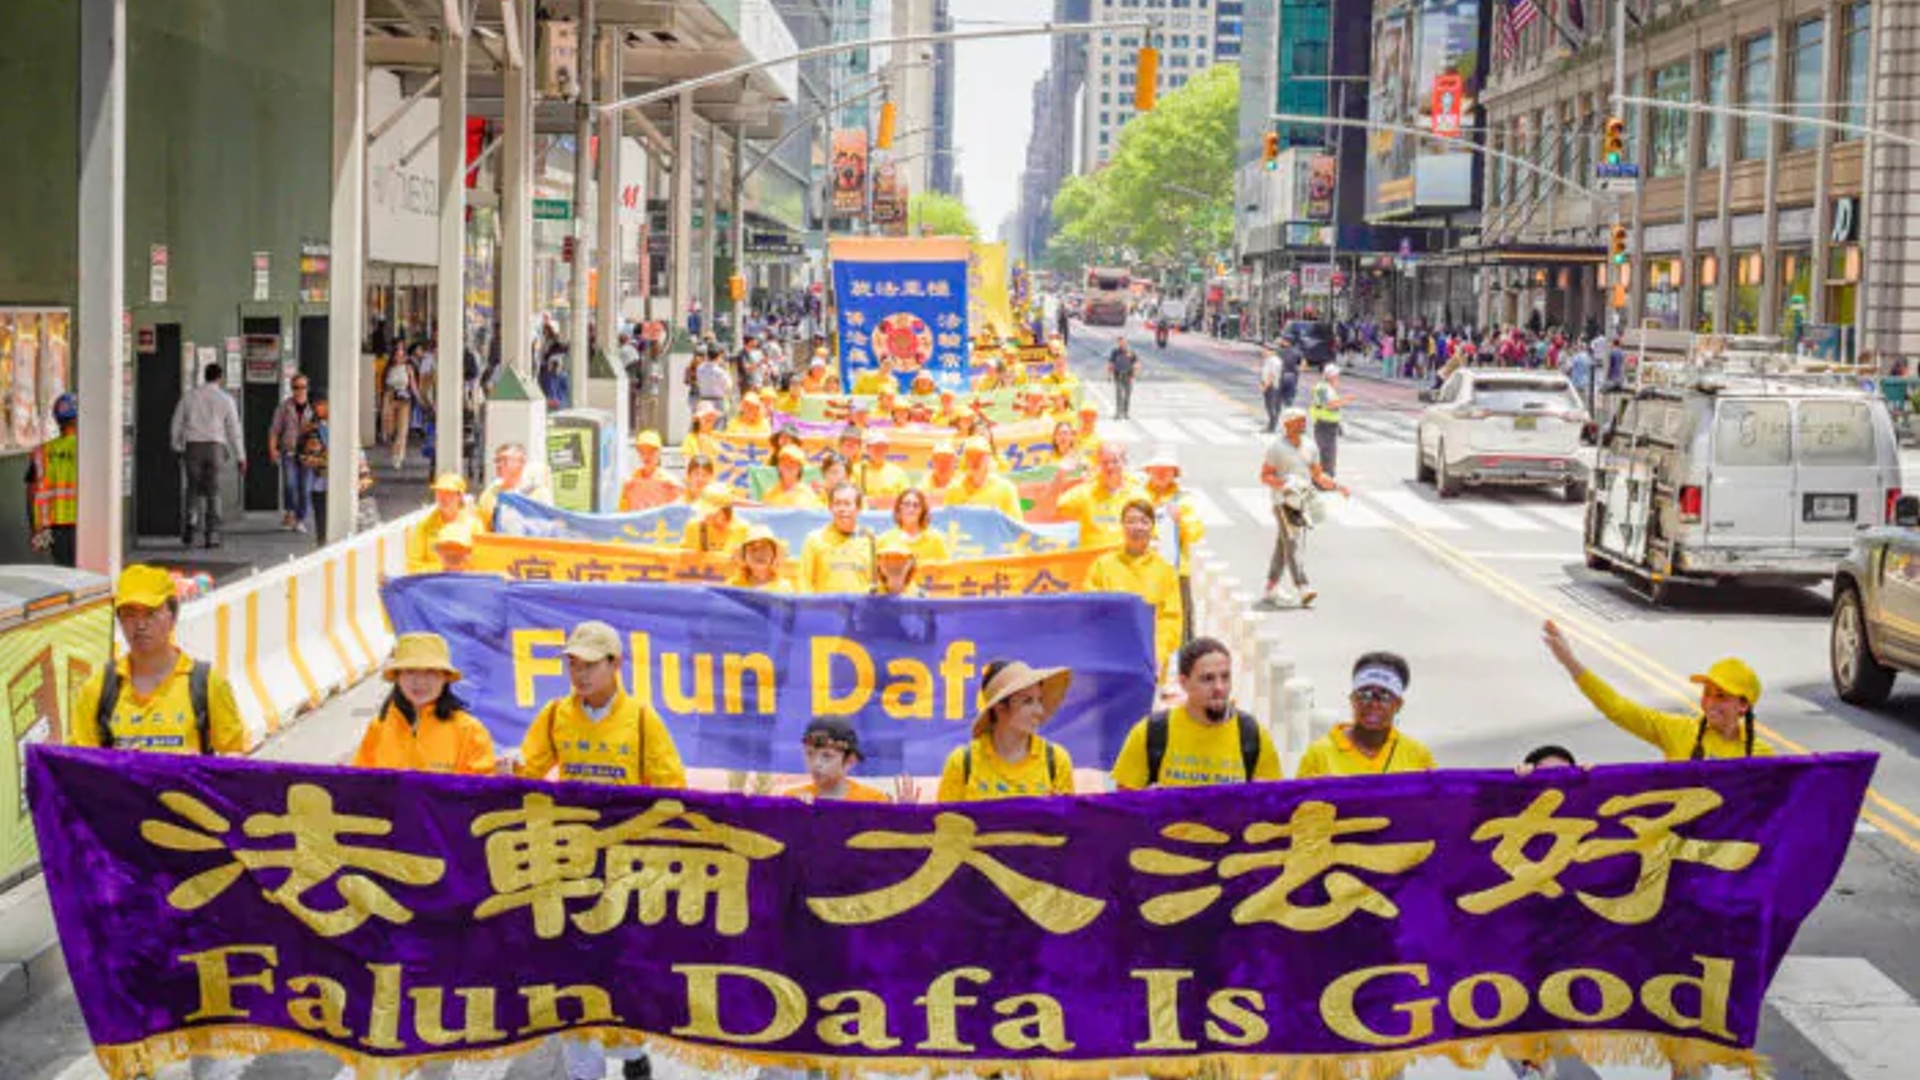 Всемирный день Фалунь Дафа отметили в центре Нью-Йорка